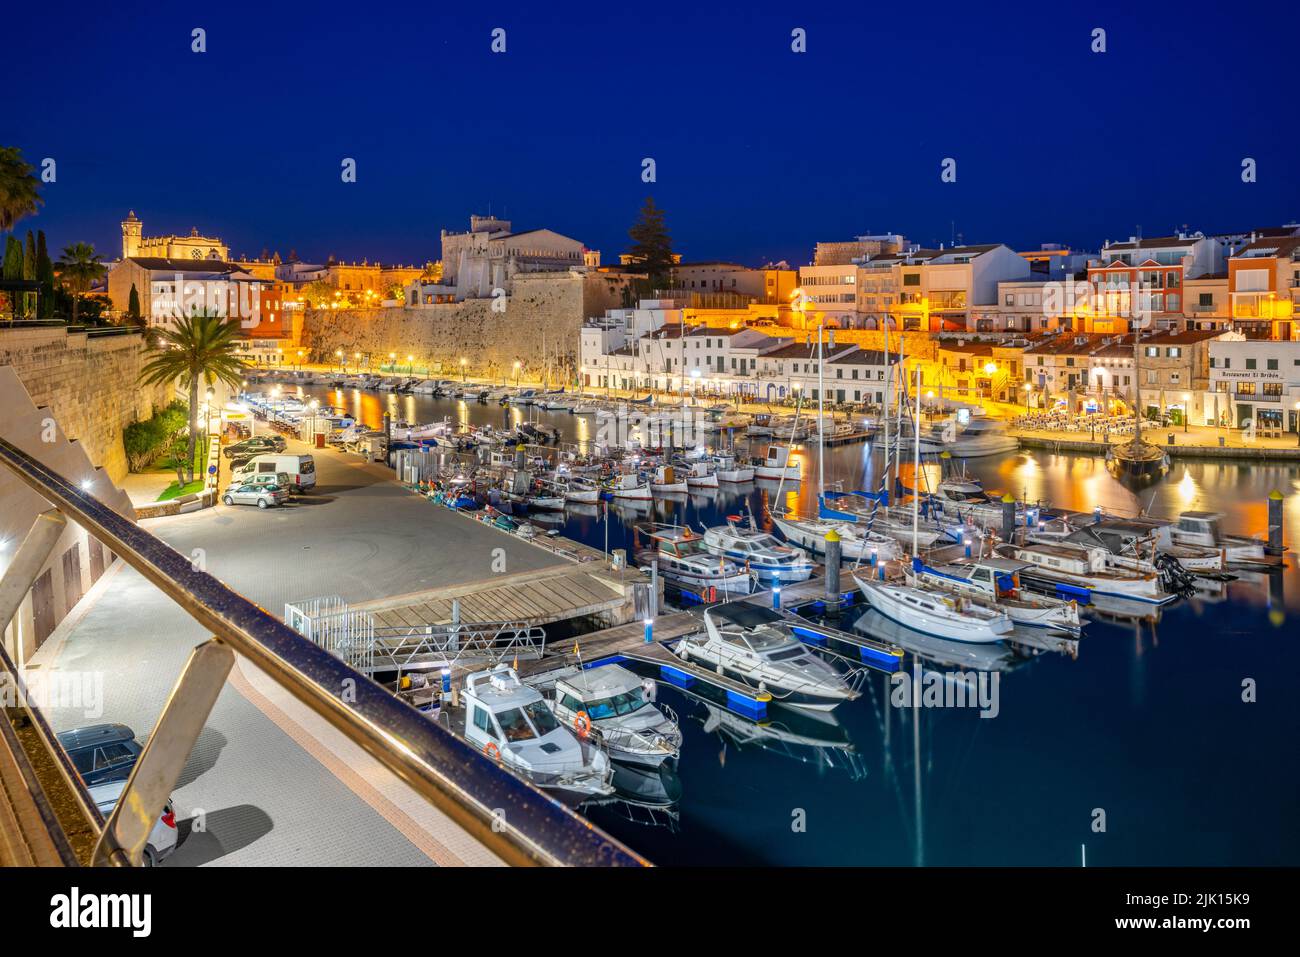 Vista delle barche nel porto turistico sovrastato da edifici imbiancati al tramonto, Ciutadella, Minorca, Isole Baleari, Spagna, Mediterraneo, Europa Foto Stock